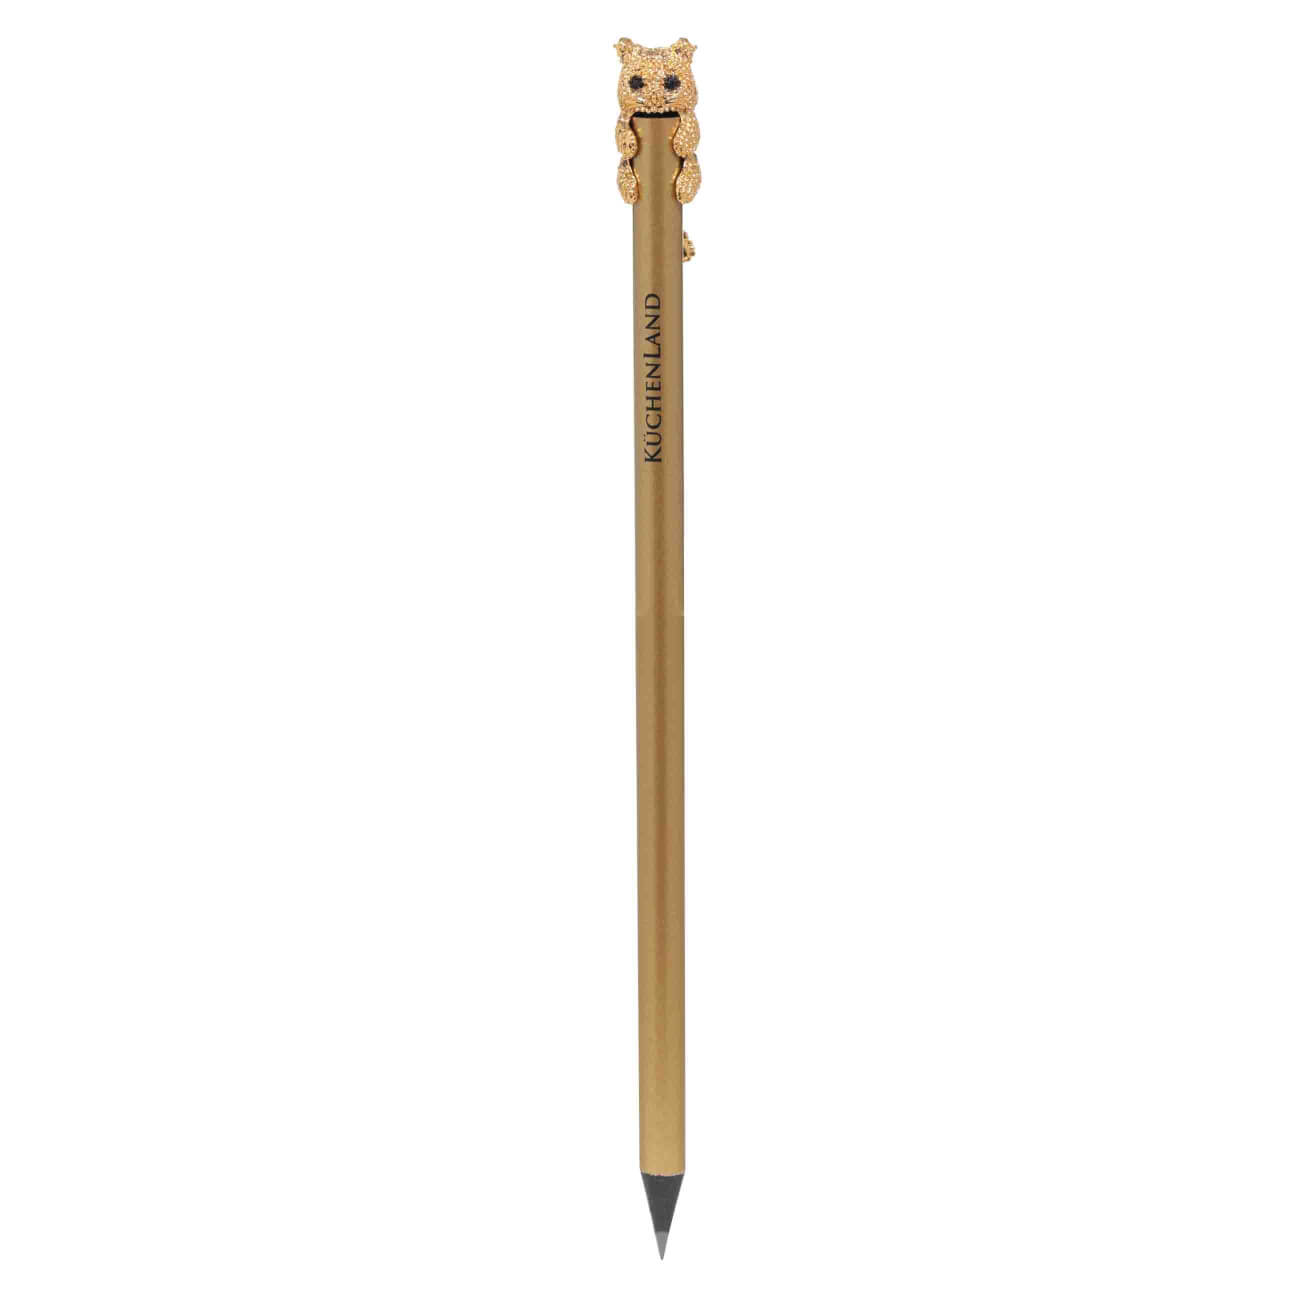 Карандаш, 18 см, чернографитный, с фигуркой, золотистый, Кот, Draw карандаш чернографитный красин конструктор 7м 7b шестигран заточен